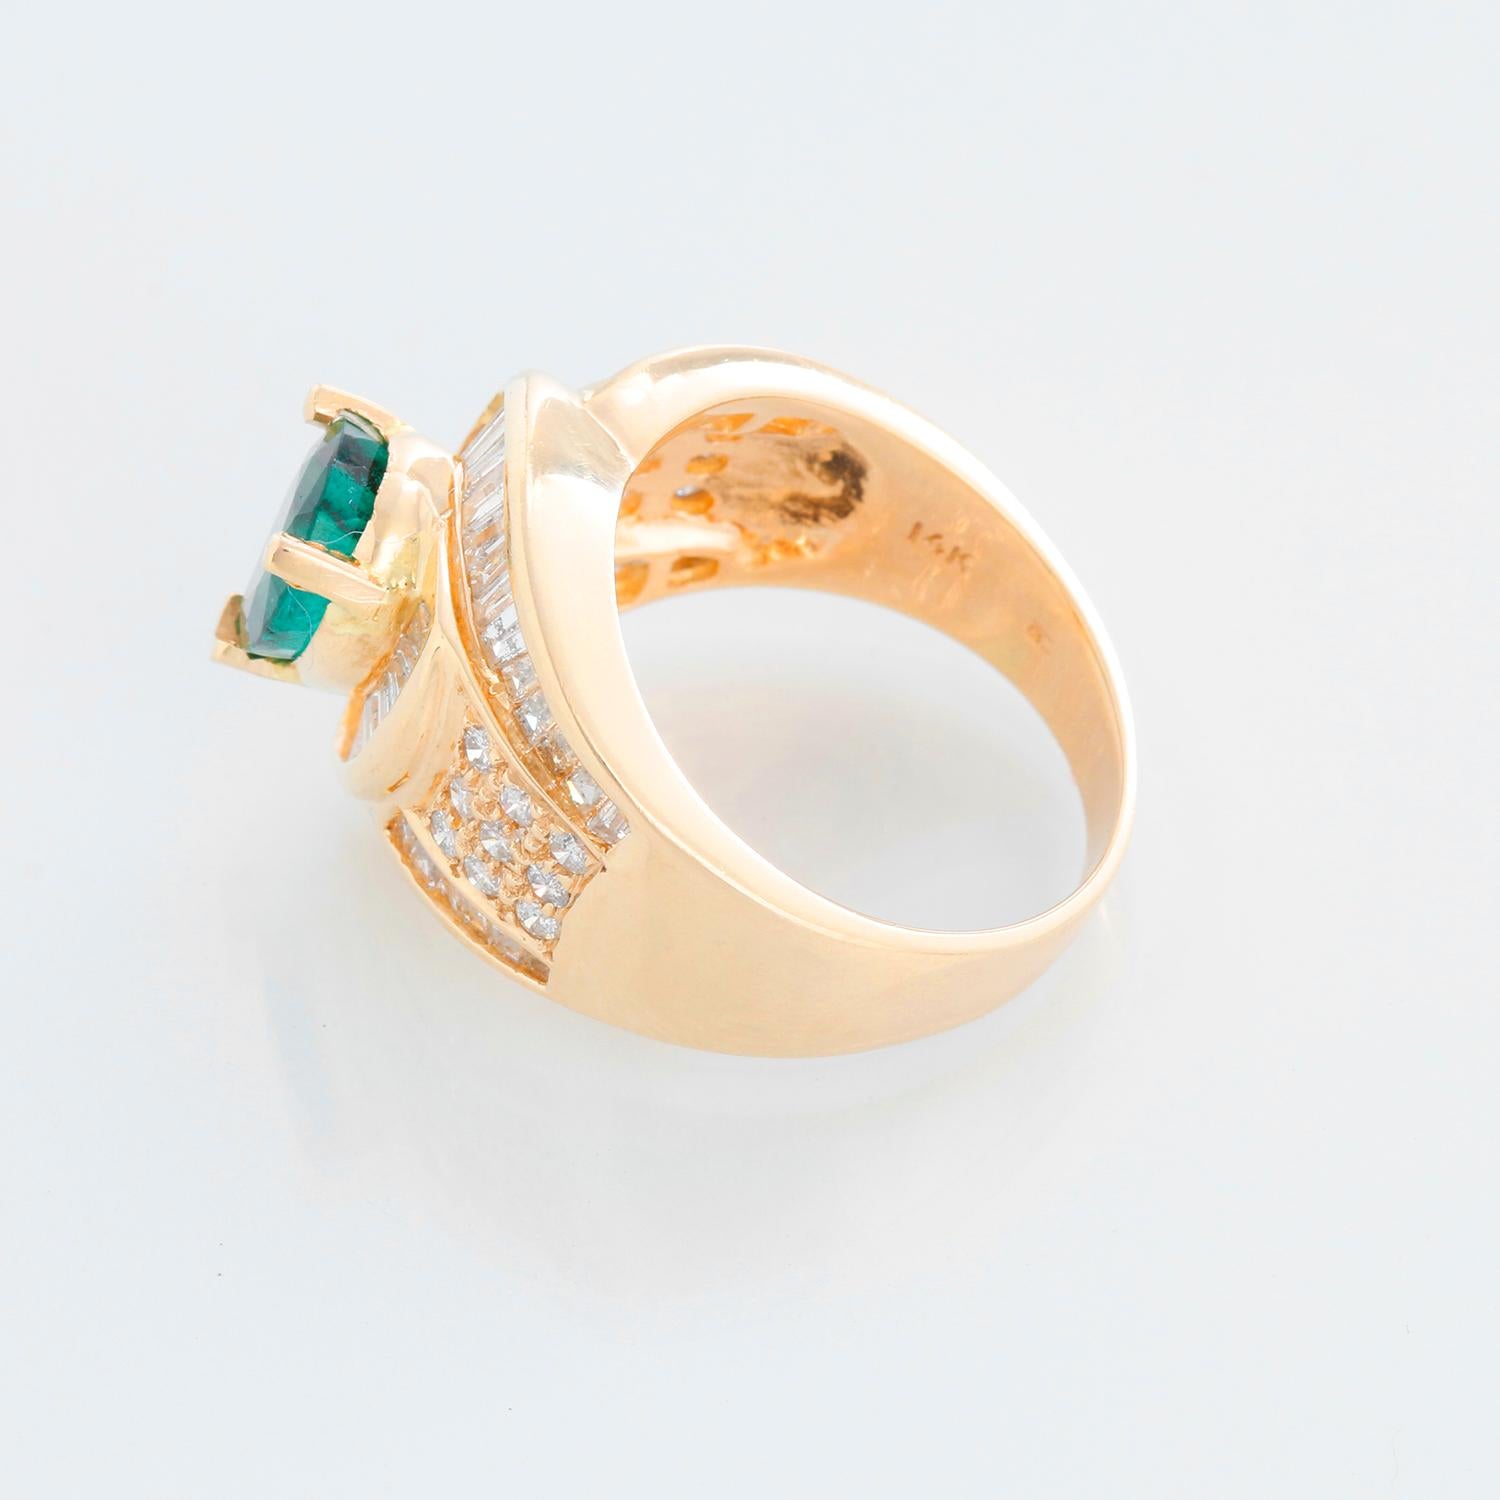 Smaragd und Diamant Mode 14K Gelbgold Ring Größe 7 1/4 - Der Ring verfügt über eine 3-Zacken-Fassung mit einem Zentrum Birne facettiert Smaragd Messung 9,50 x 7,07 x 3,70 mm. Geschätztes Gewicht 1,18 Karat. Der Smaragd ist umgeben von 38 Diamanten